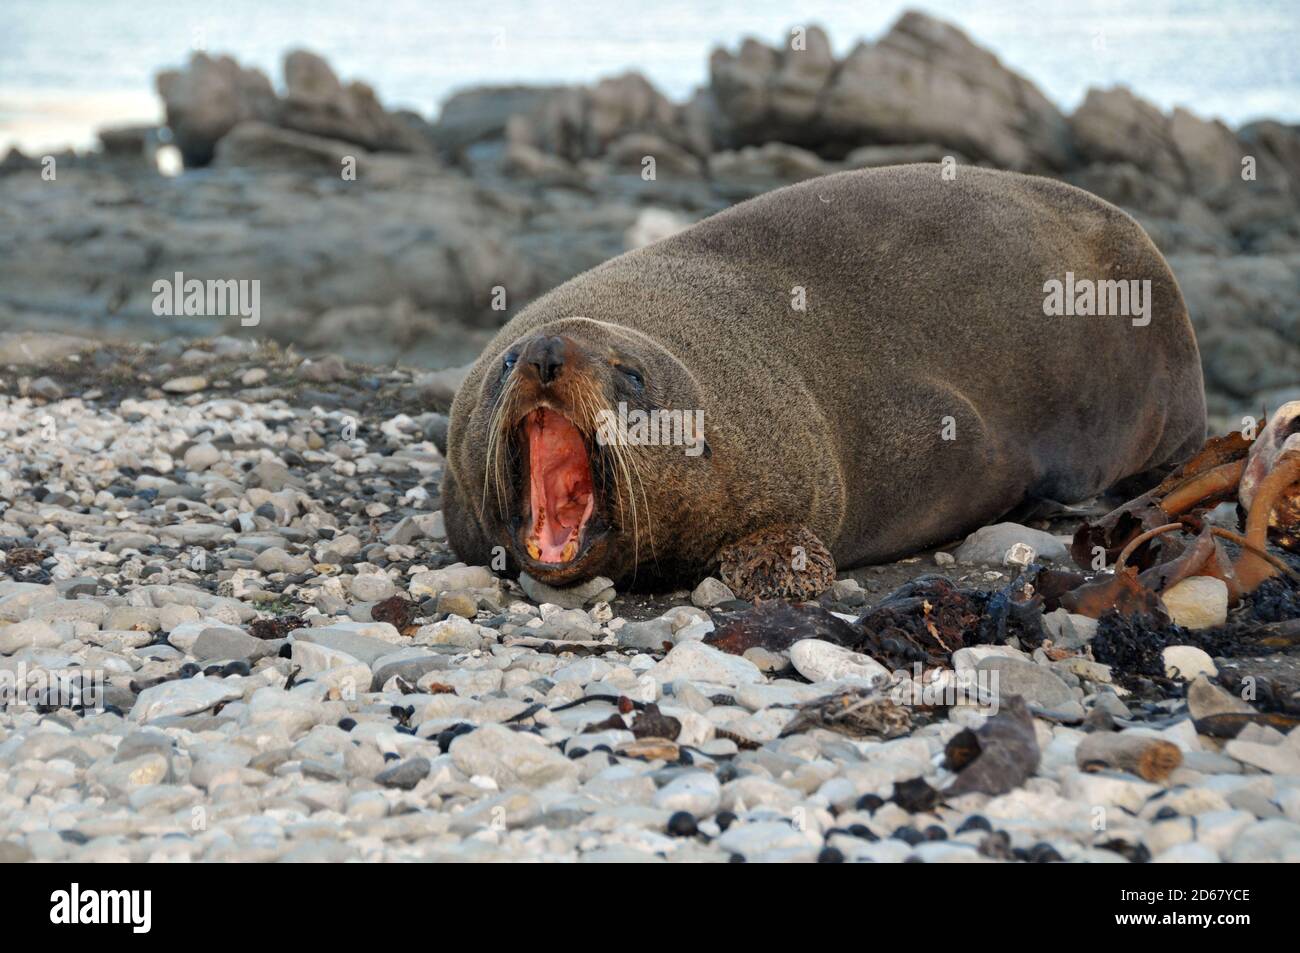 New Zealand fur seal or kekeno, Arctocephalus forsteri, Kaikoura Peninsula, Kaikoura, South Island, New Zealand Stock Photo